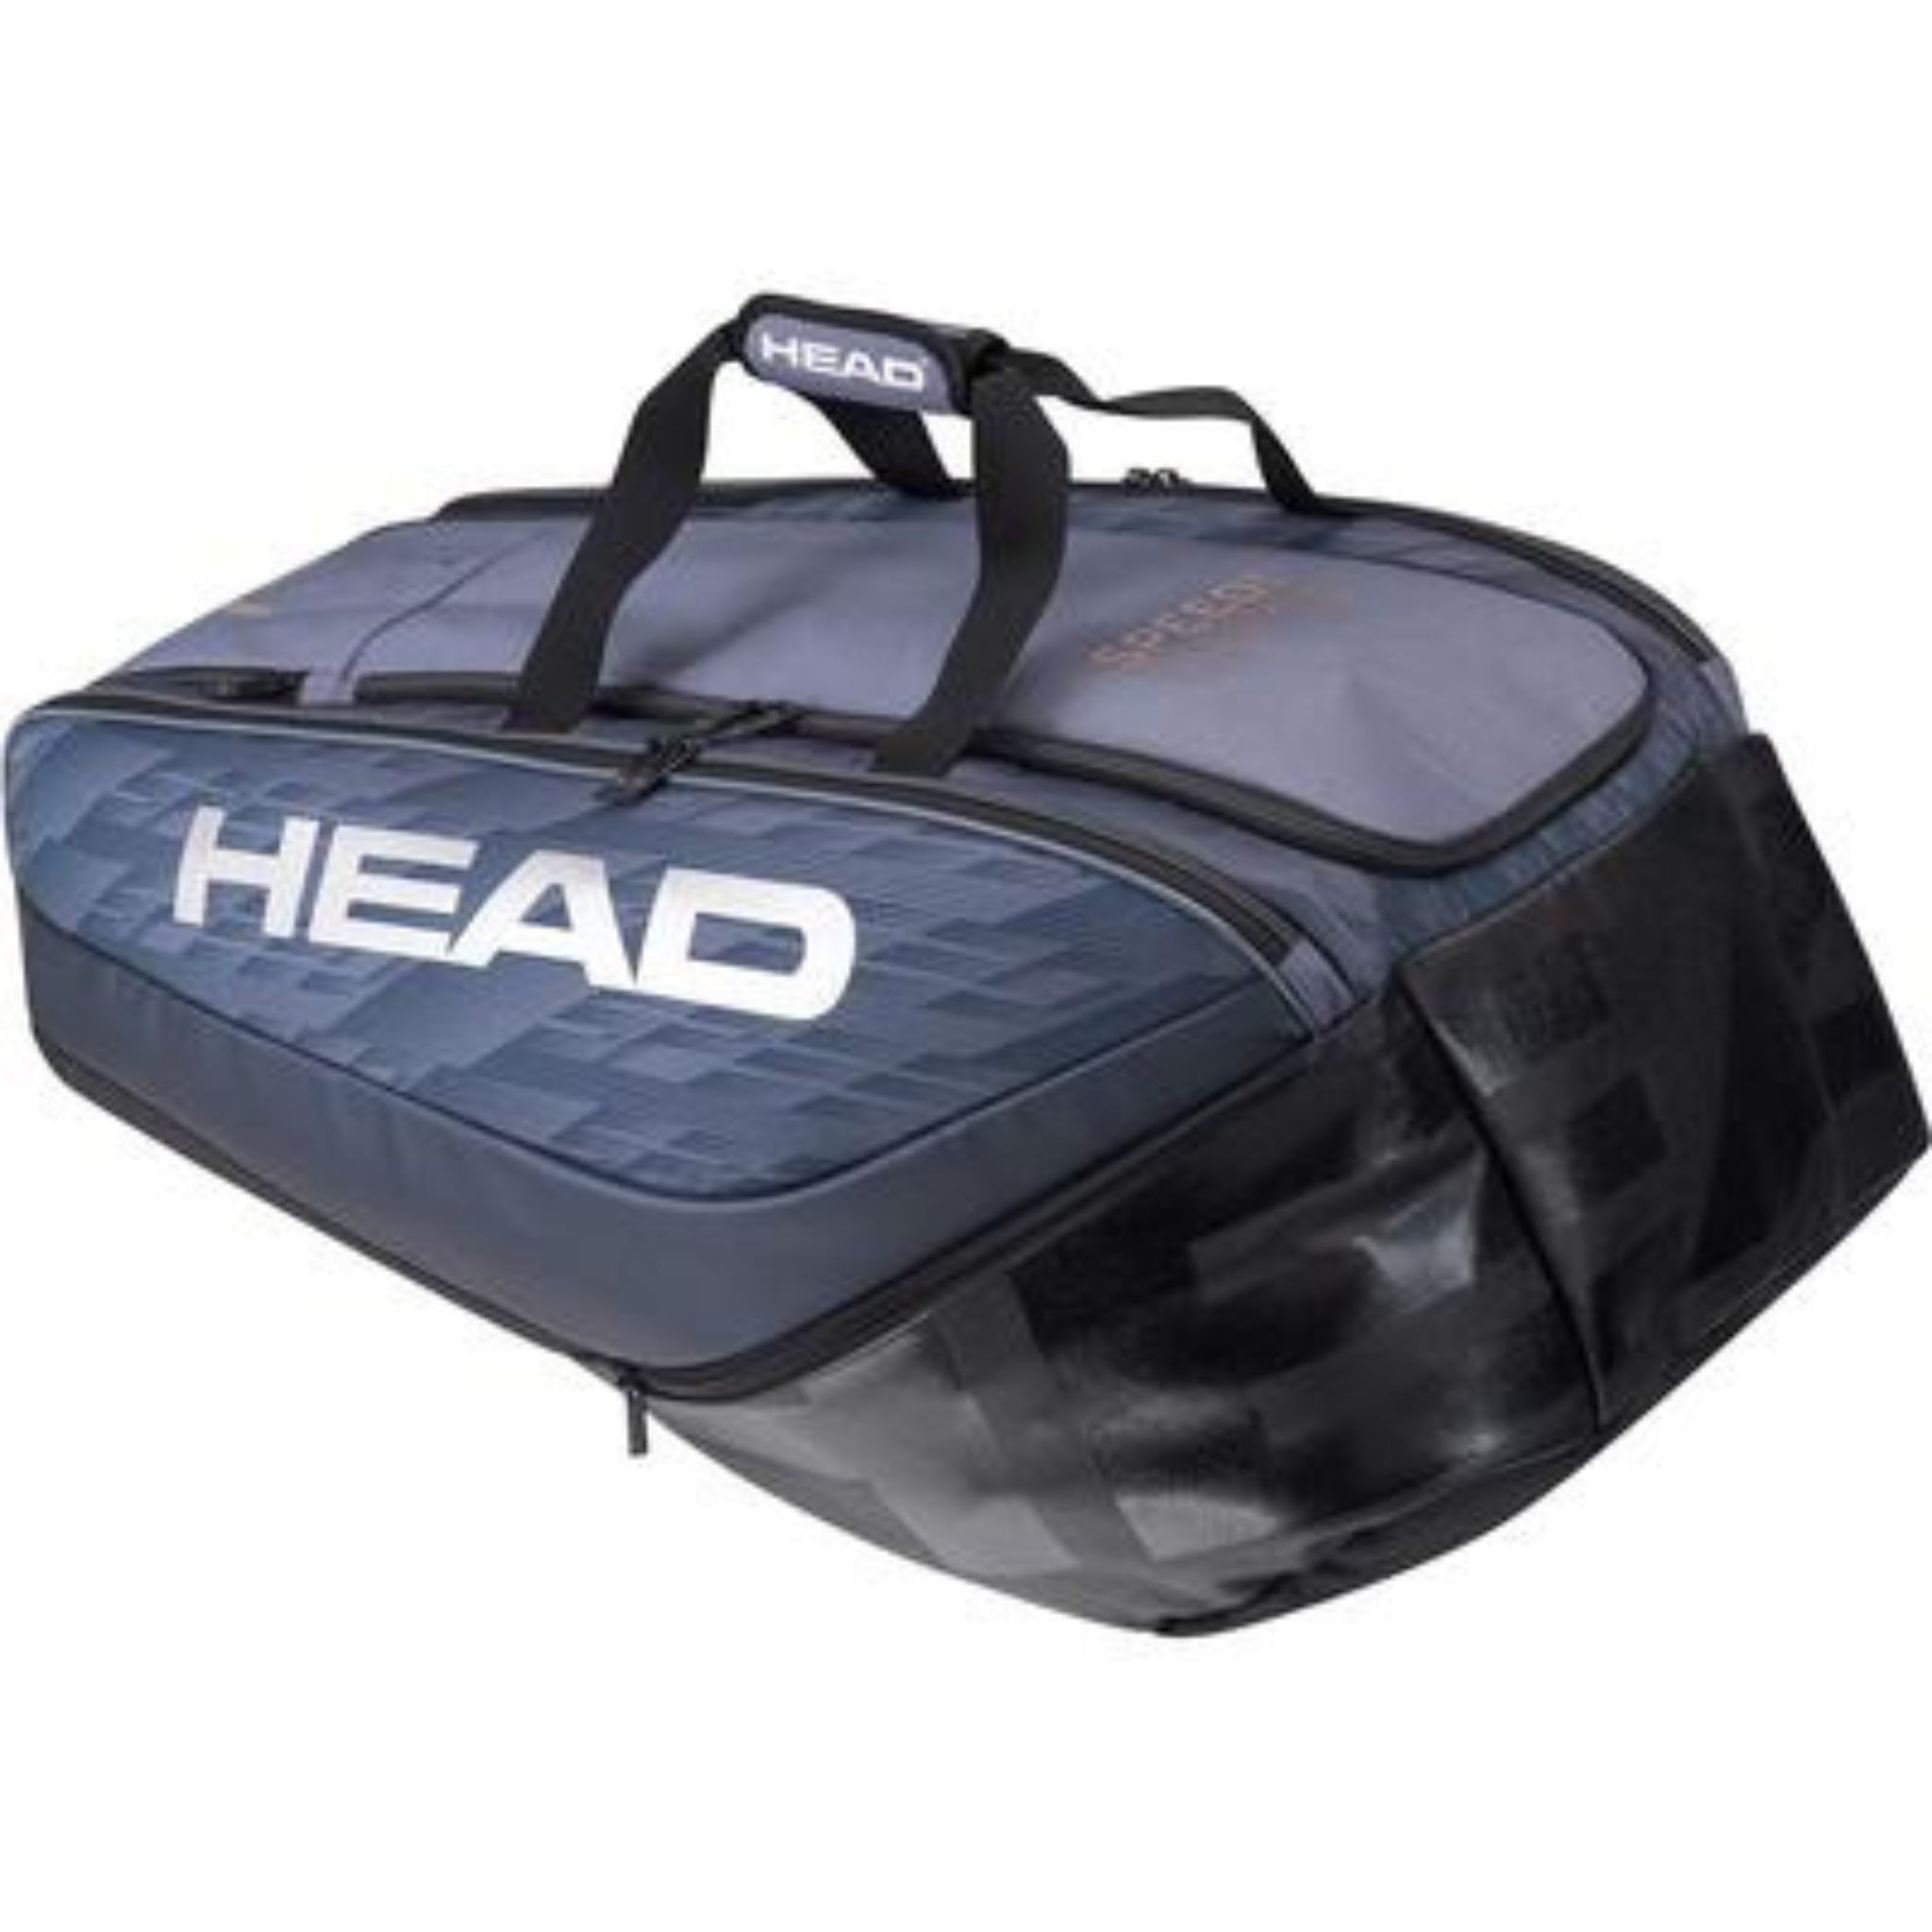 HEAD Djokovic 12 Racket bag